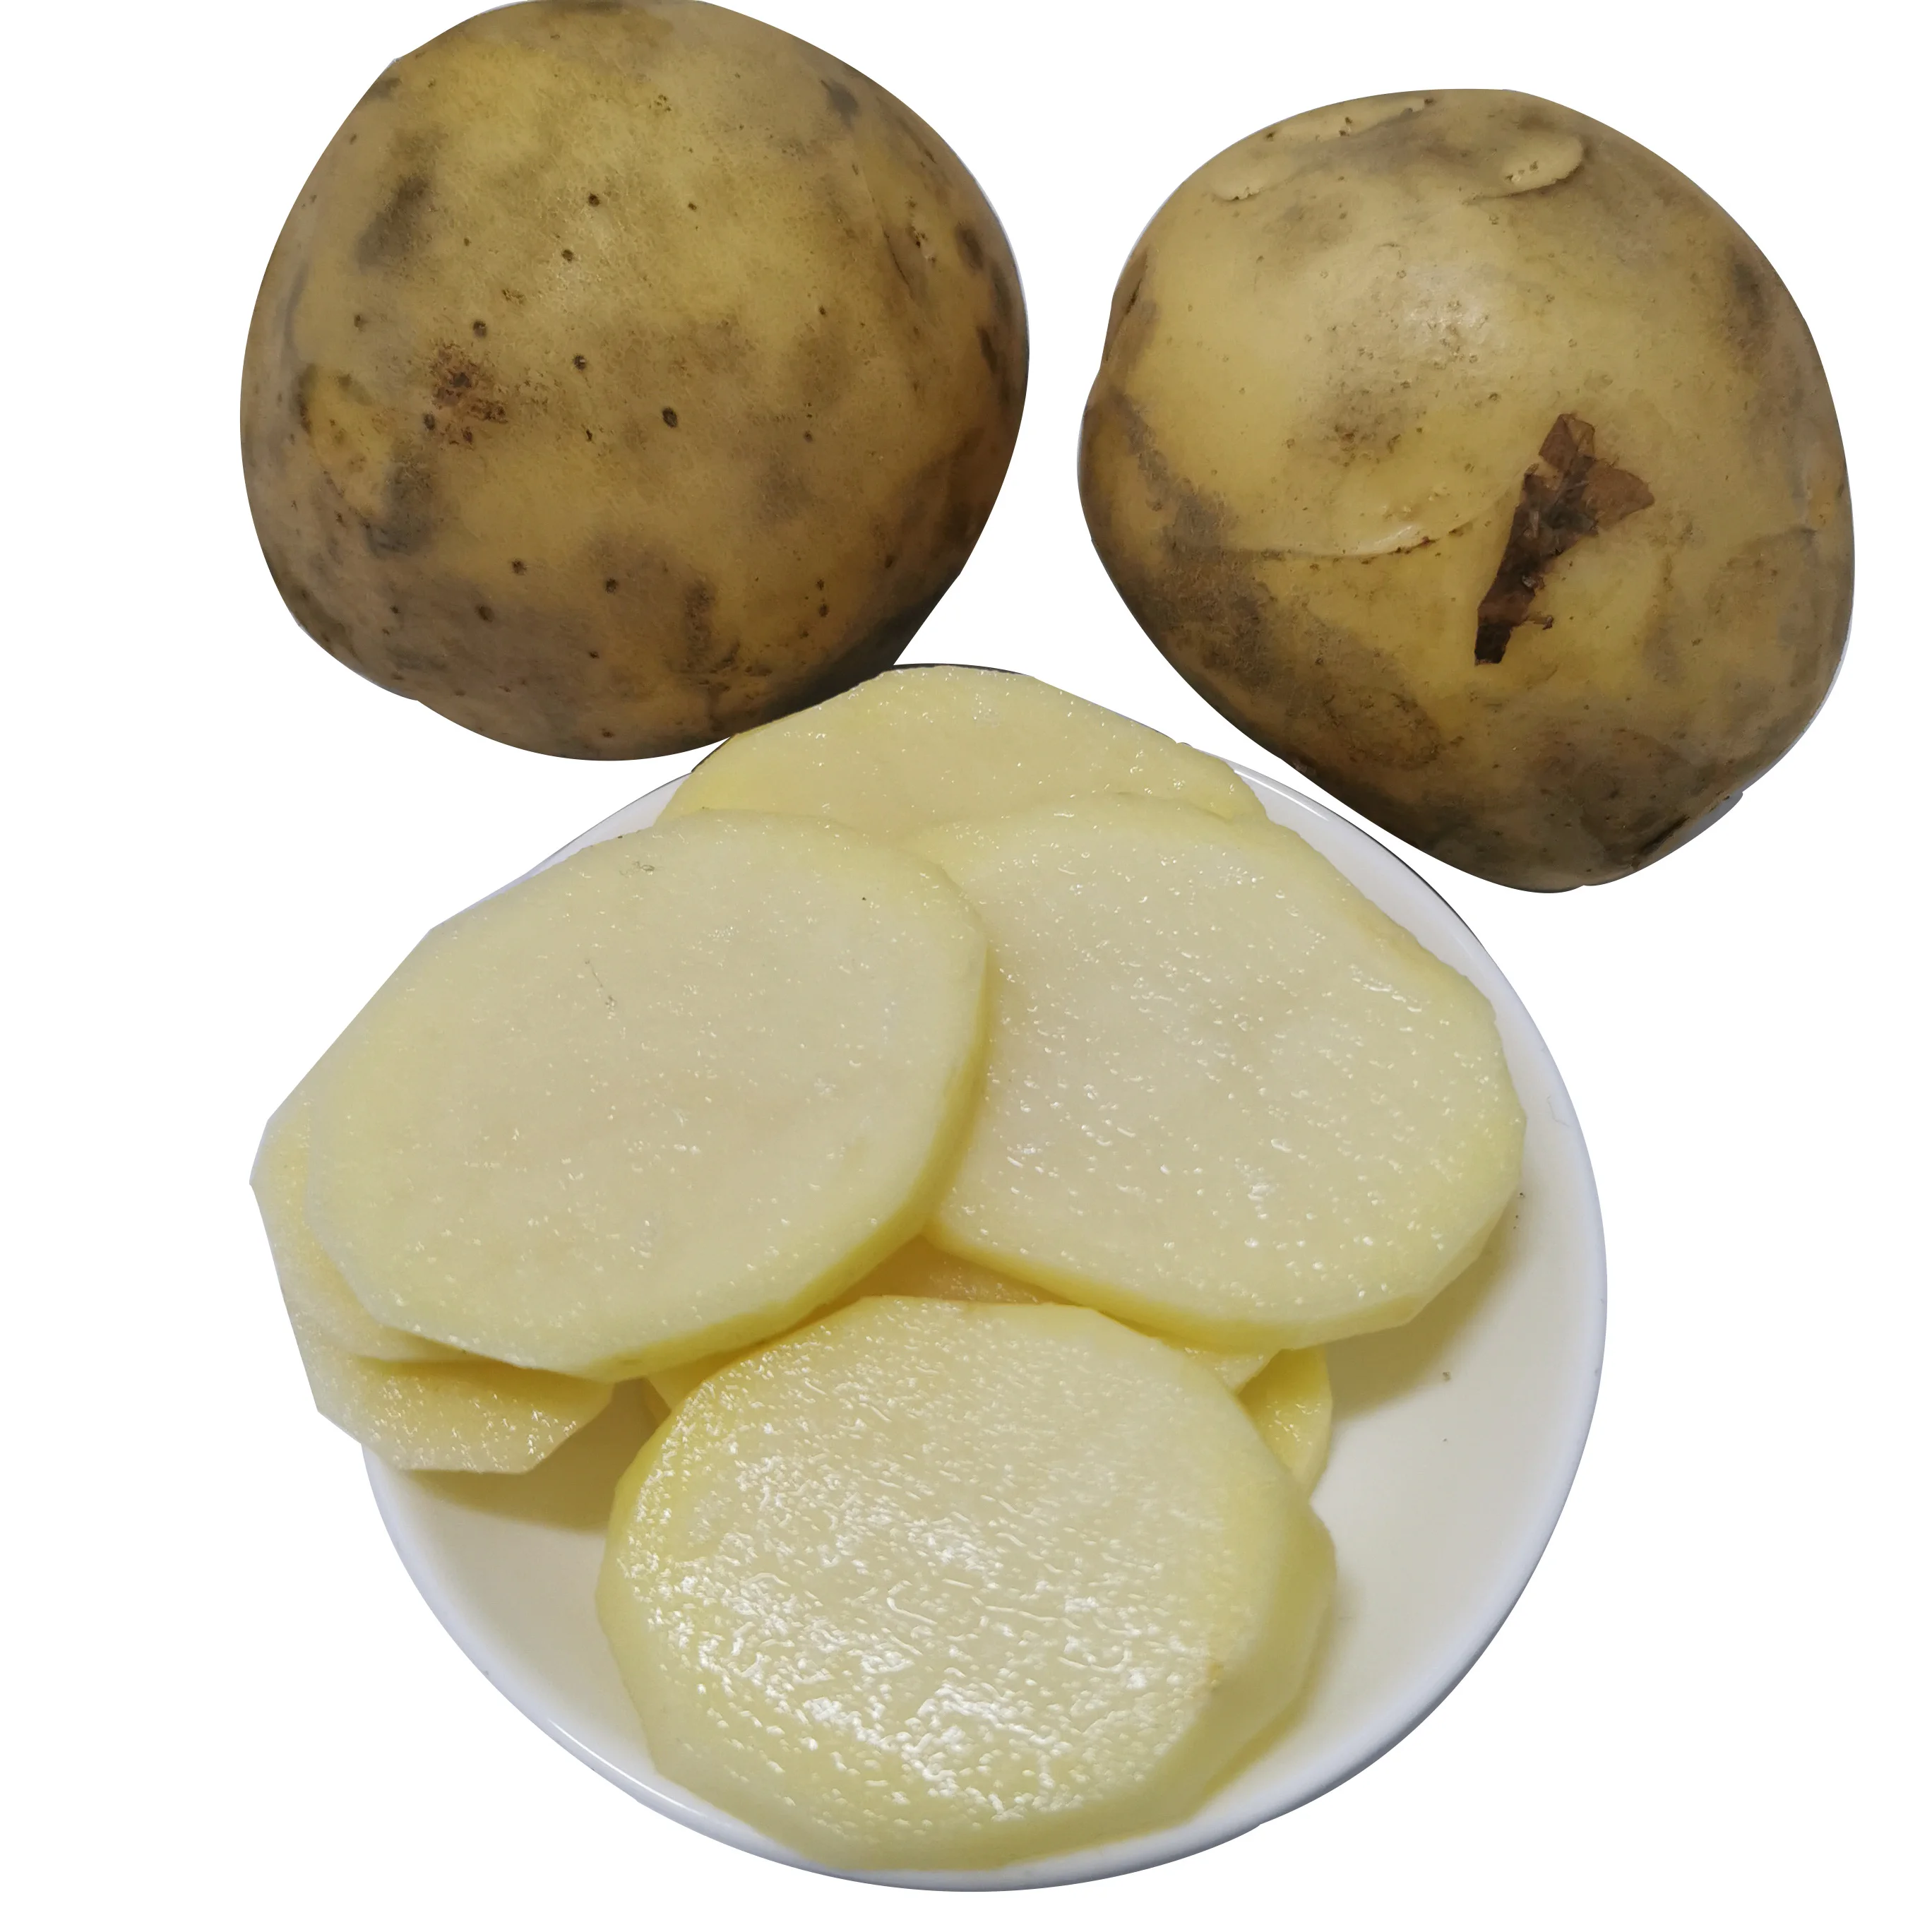 Fresh yellow potatoes